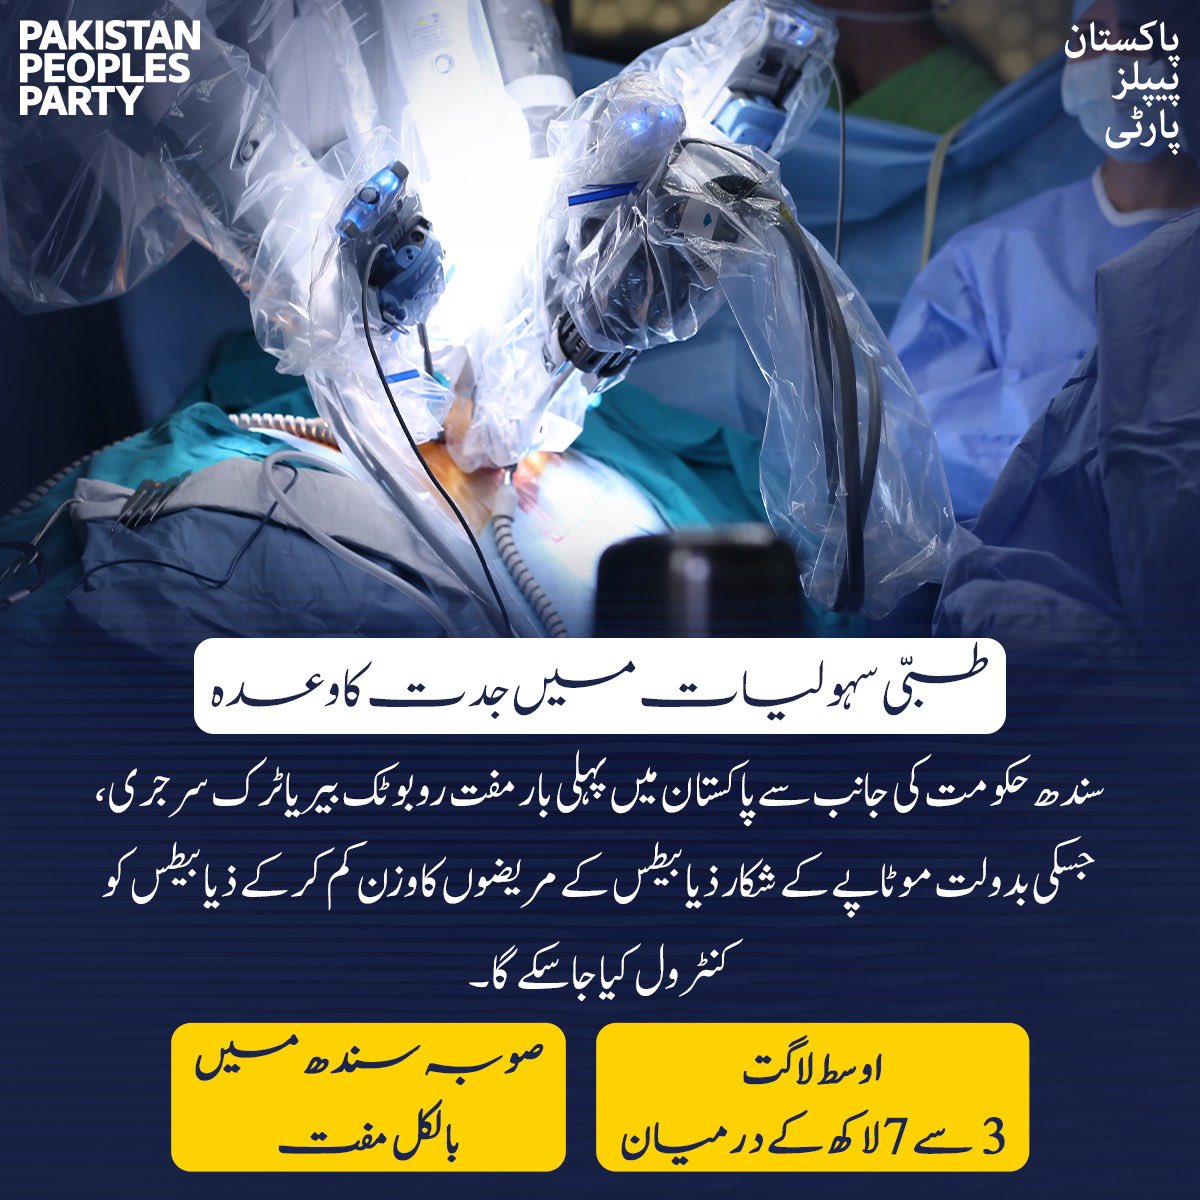 حکومت سندھ کی جانب سے جناح پوسٹ گریجویٹ میڈیکل سینٹر کراچی میں پاکستان کی تاریخ میں پہلی بار روبوٹک بیریاٹرک سرجری کی گئی، جس کا مقصد موٹاپے کے شکار ذیابیطس کے مریضوں کا وزن کم کر کے ذیابیطس کو کنٹرول کرنا ہے۔ 3 سے 7 لاکھ روپے کی لاگت کی 'روبوٹک بیریاٹرک سرجری'جے پی ایم سی کراچی…